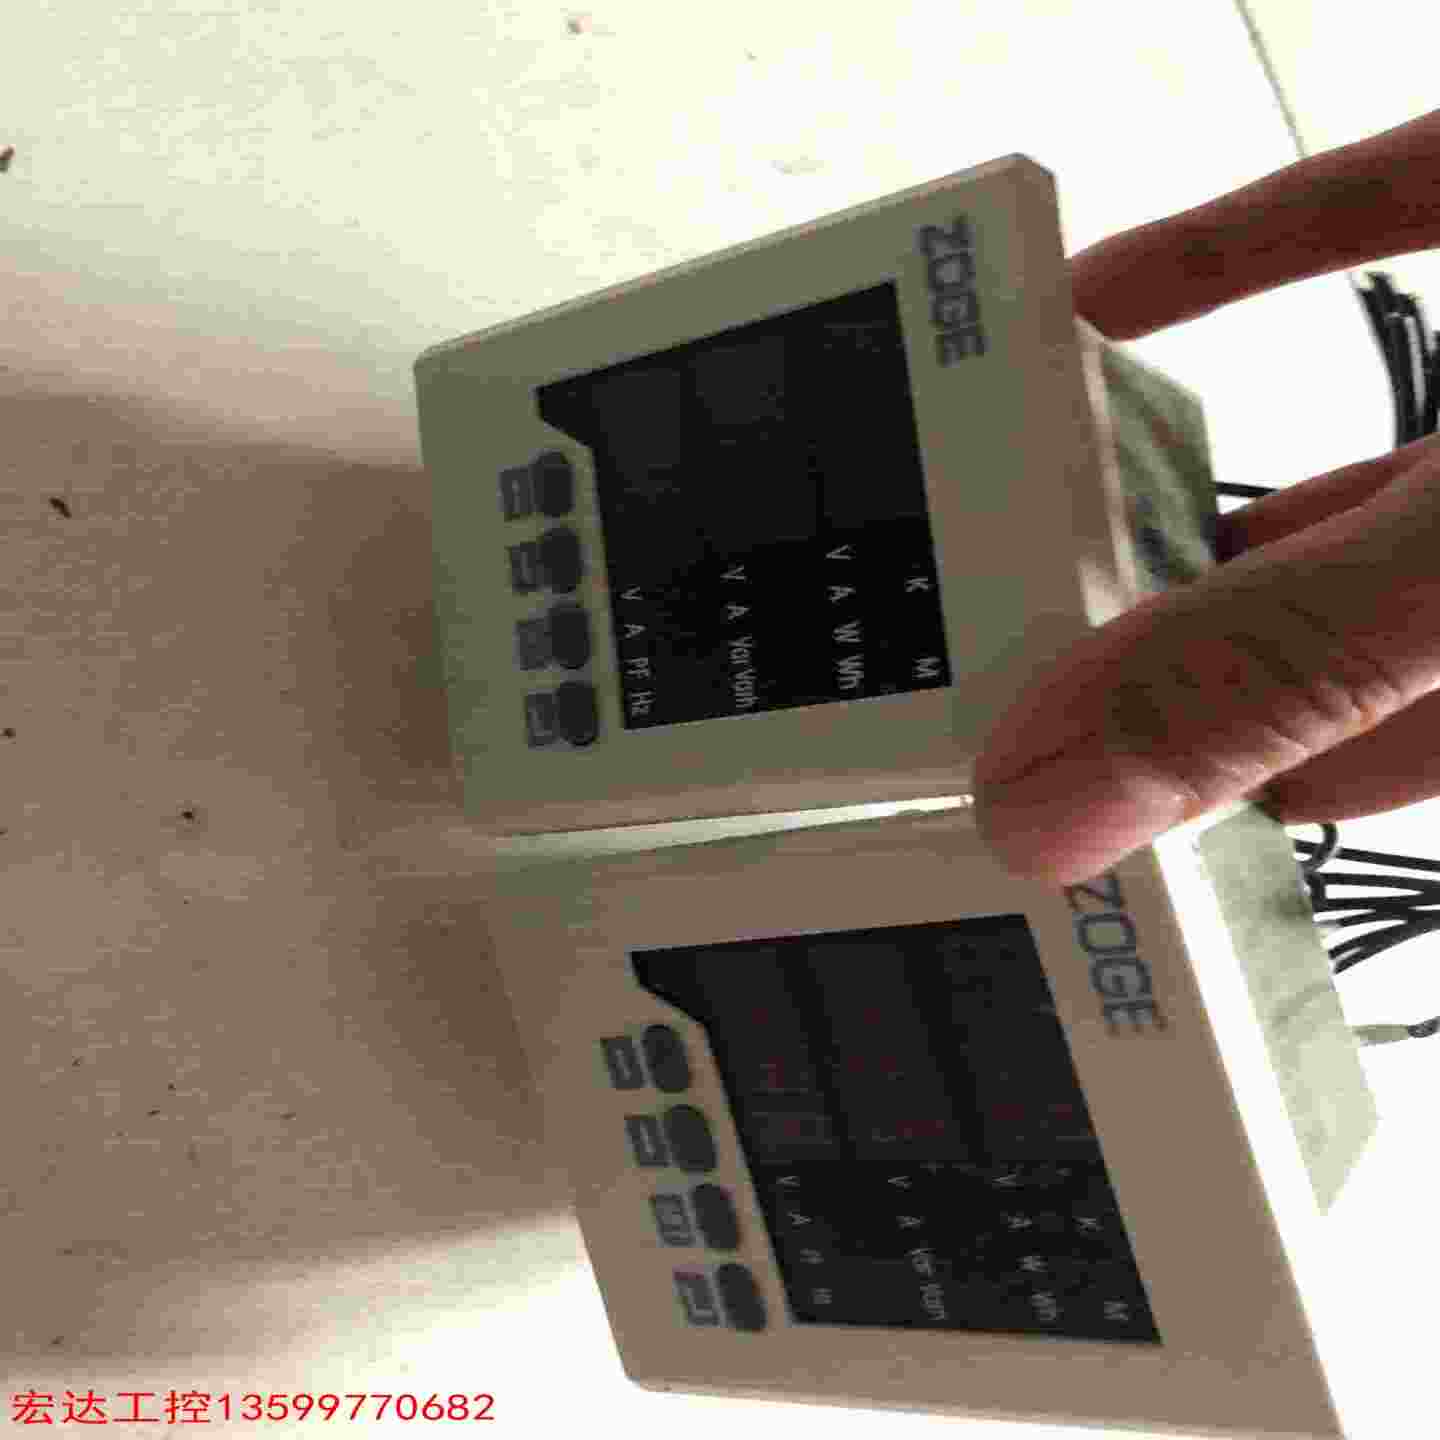 上海恩标多功能电侧表型号如图实物拍摄功能完好两台16